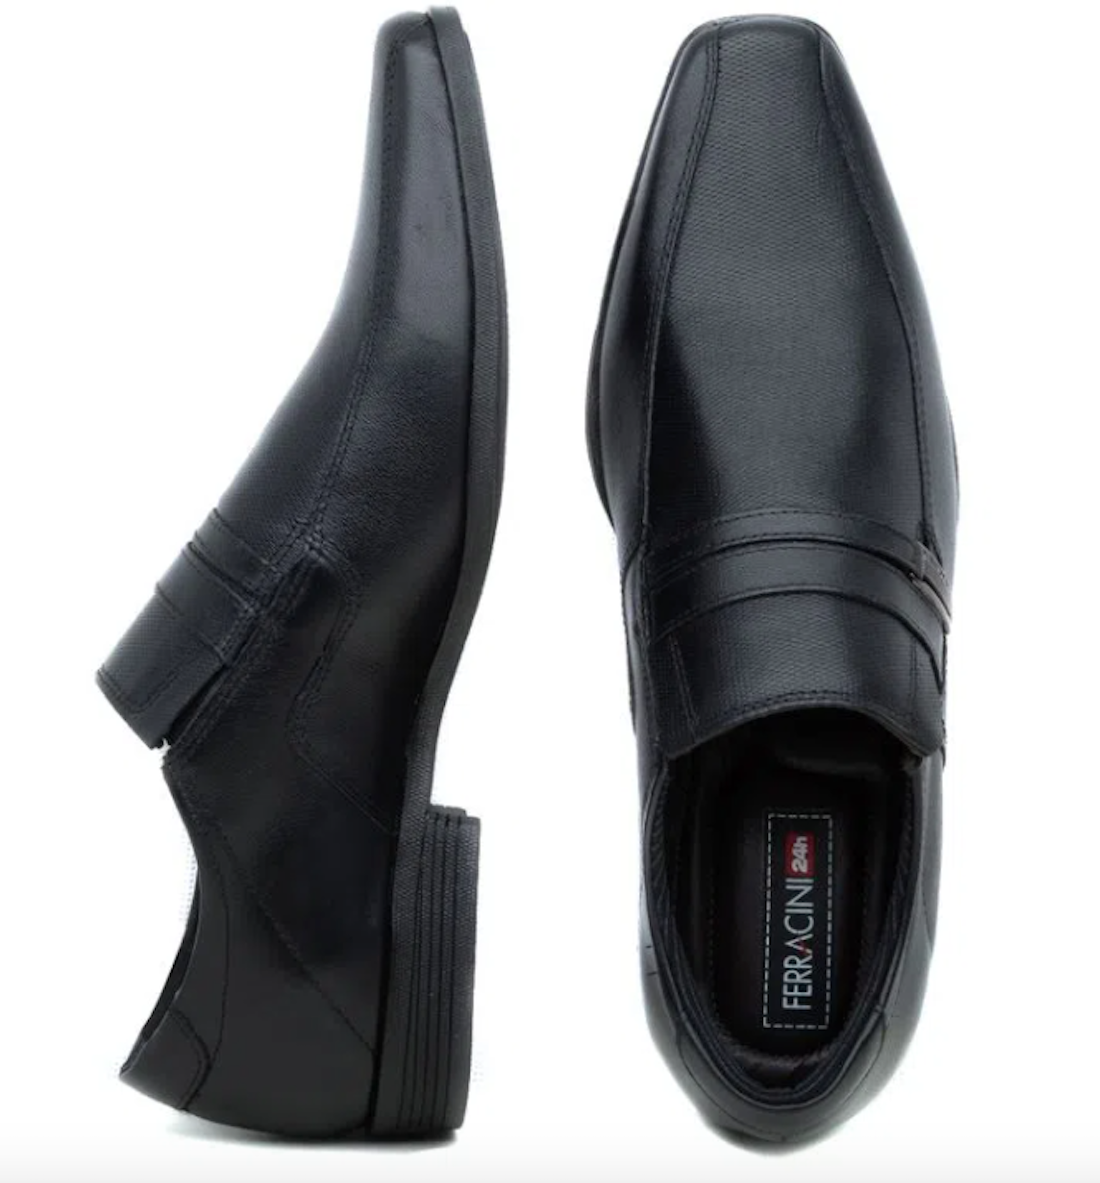 Ferracini Men's Liverpool Leather Shoe 4068